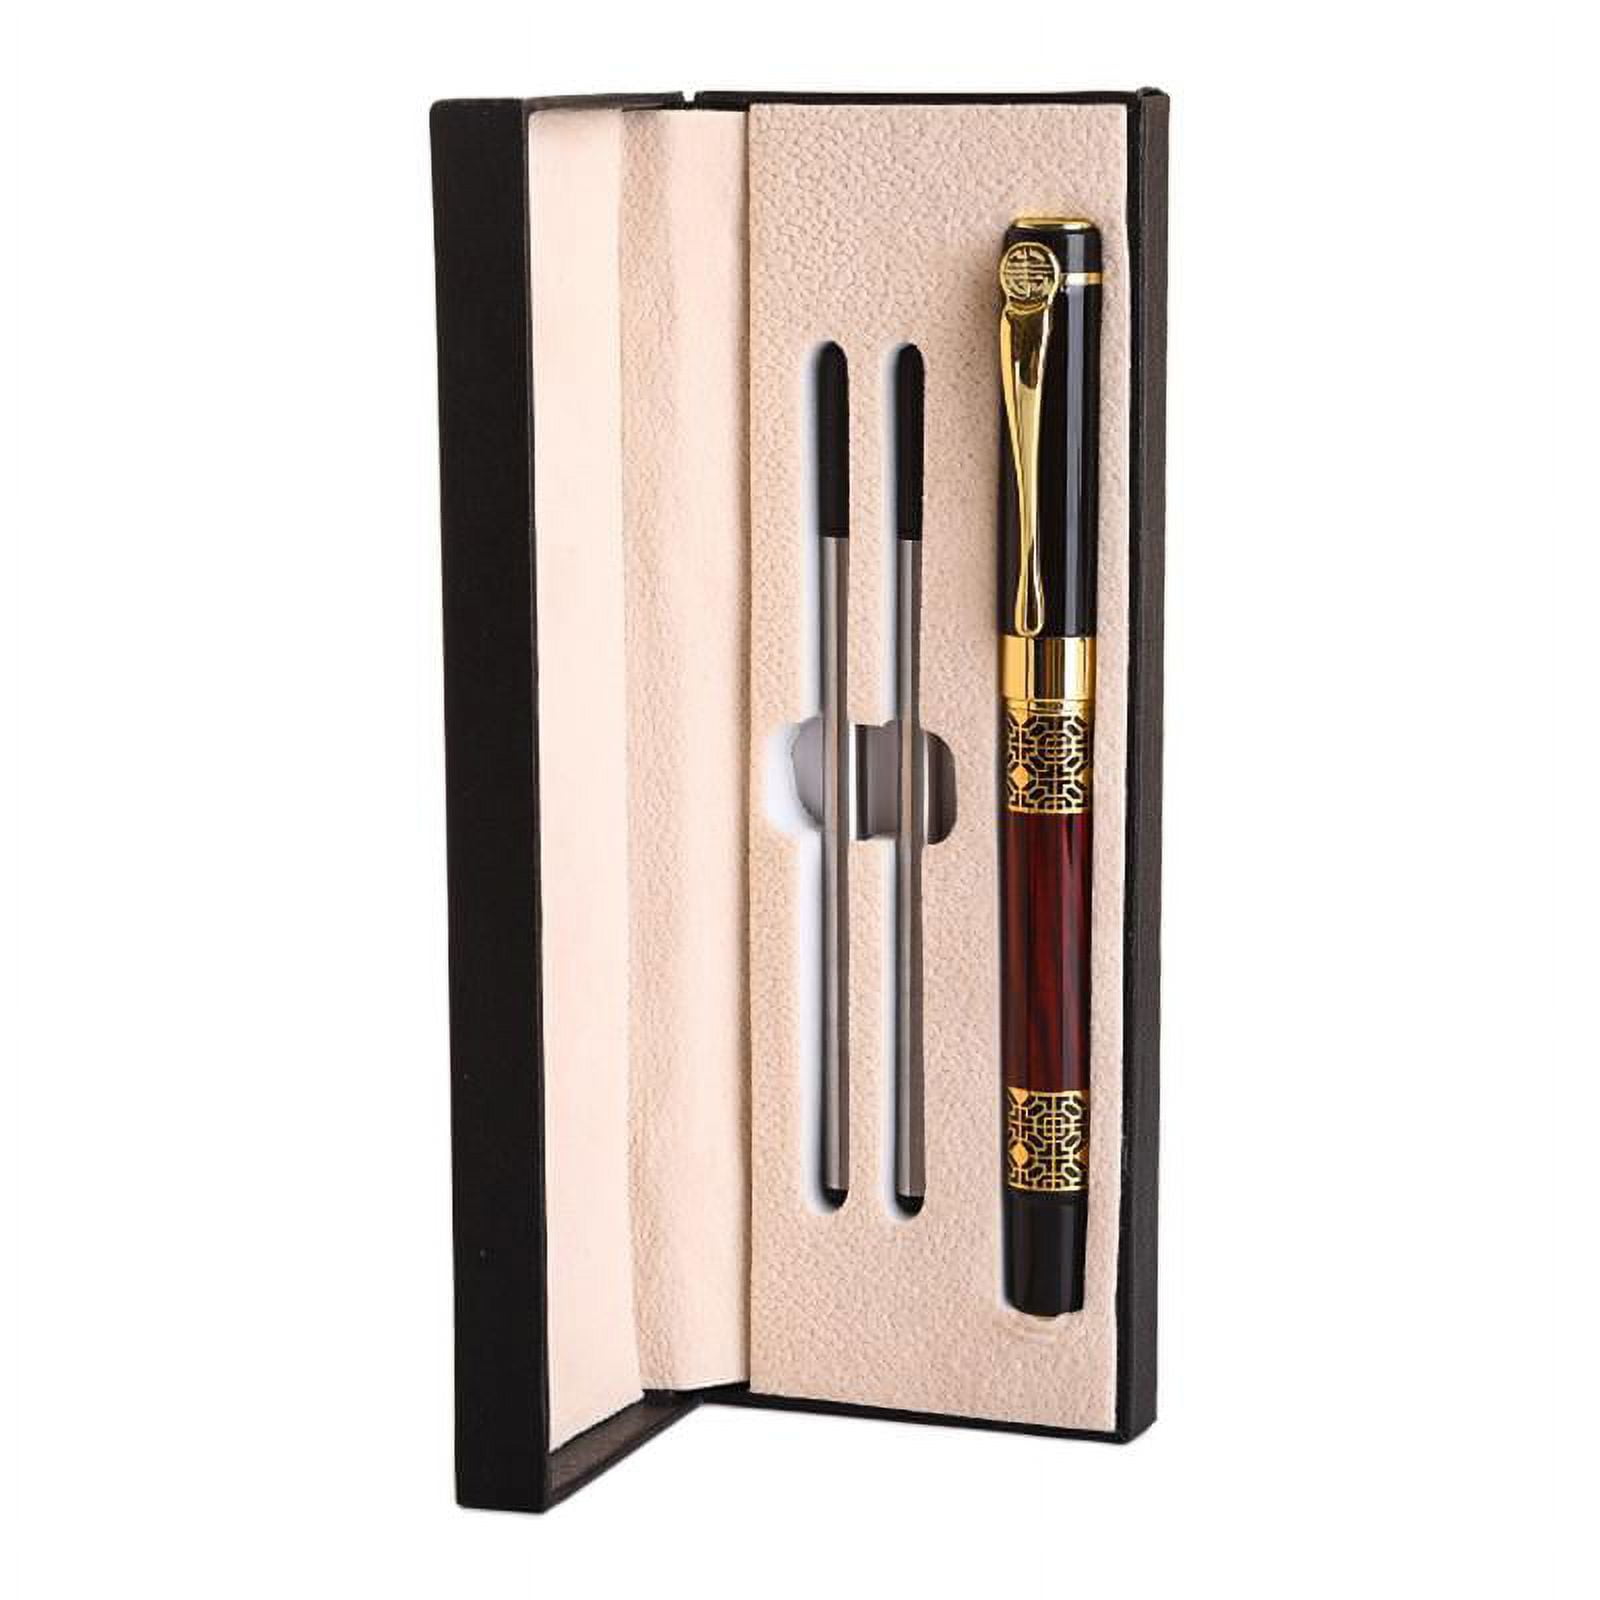 HeroNeo Stunning Luxury Ballpoint Pen Set Black Refill Pen 0.5mm Point ...